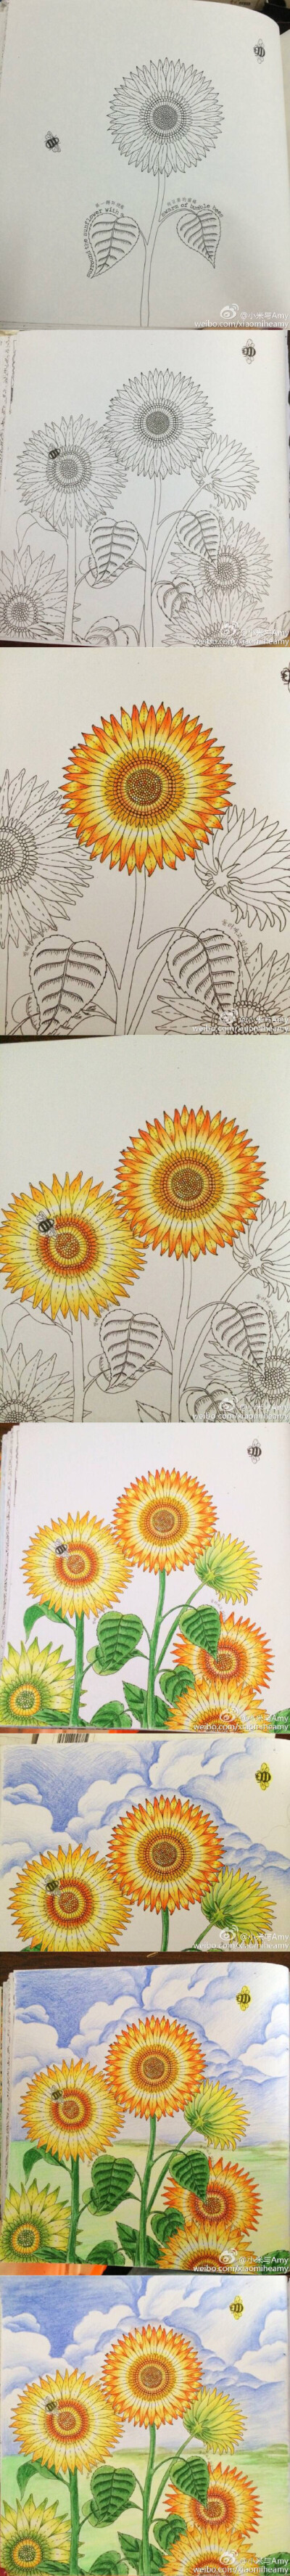 秘密花园向日葵涂色图片